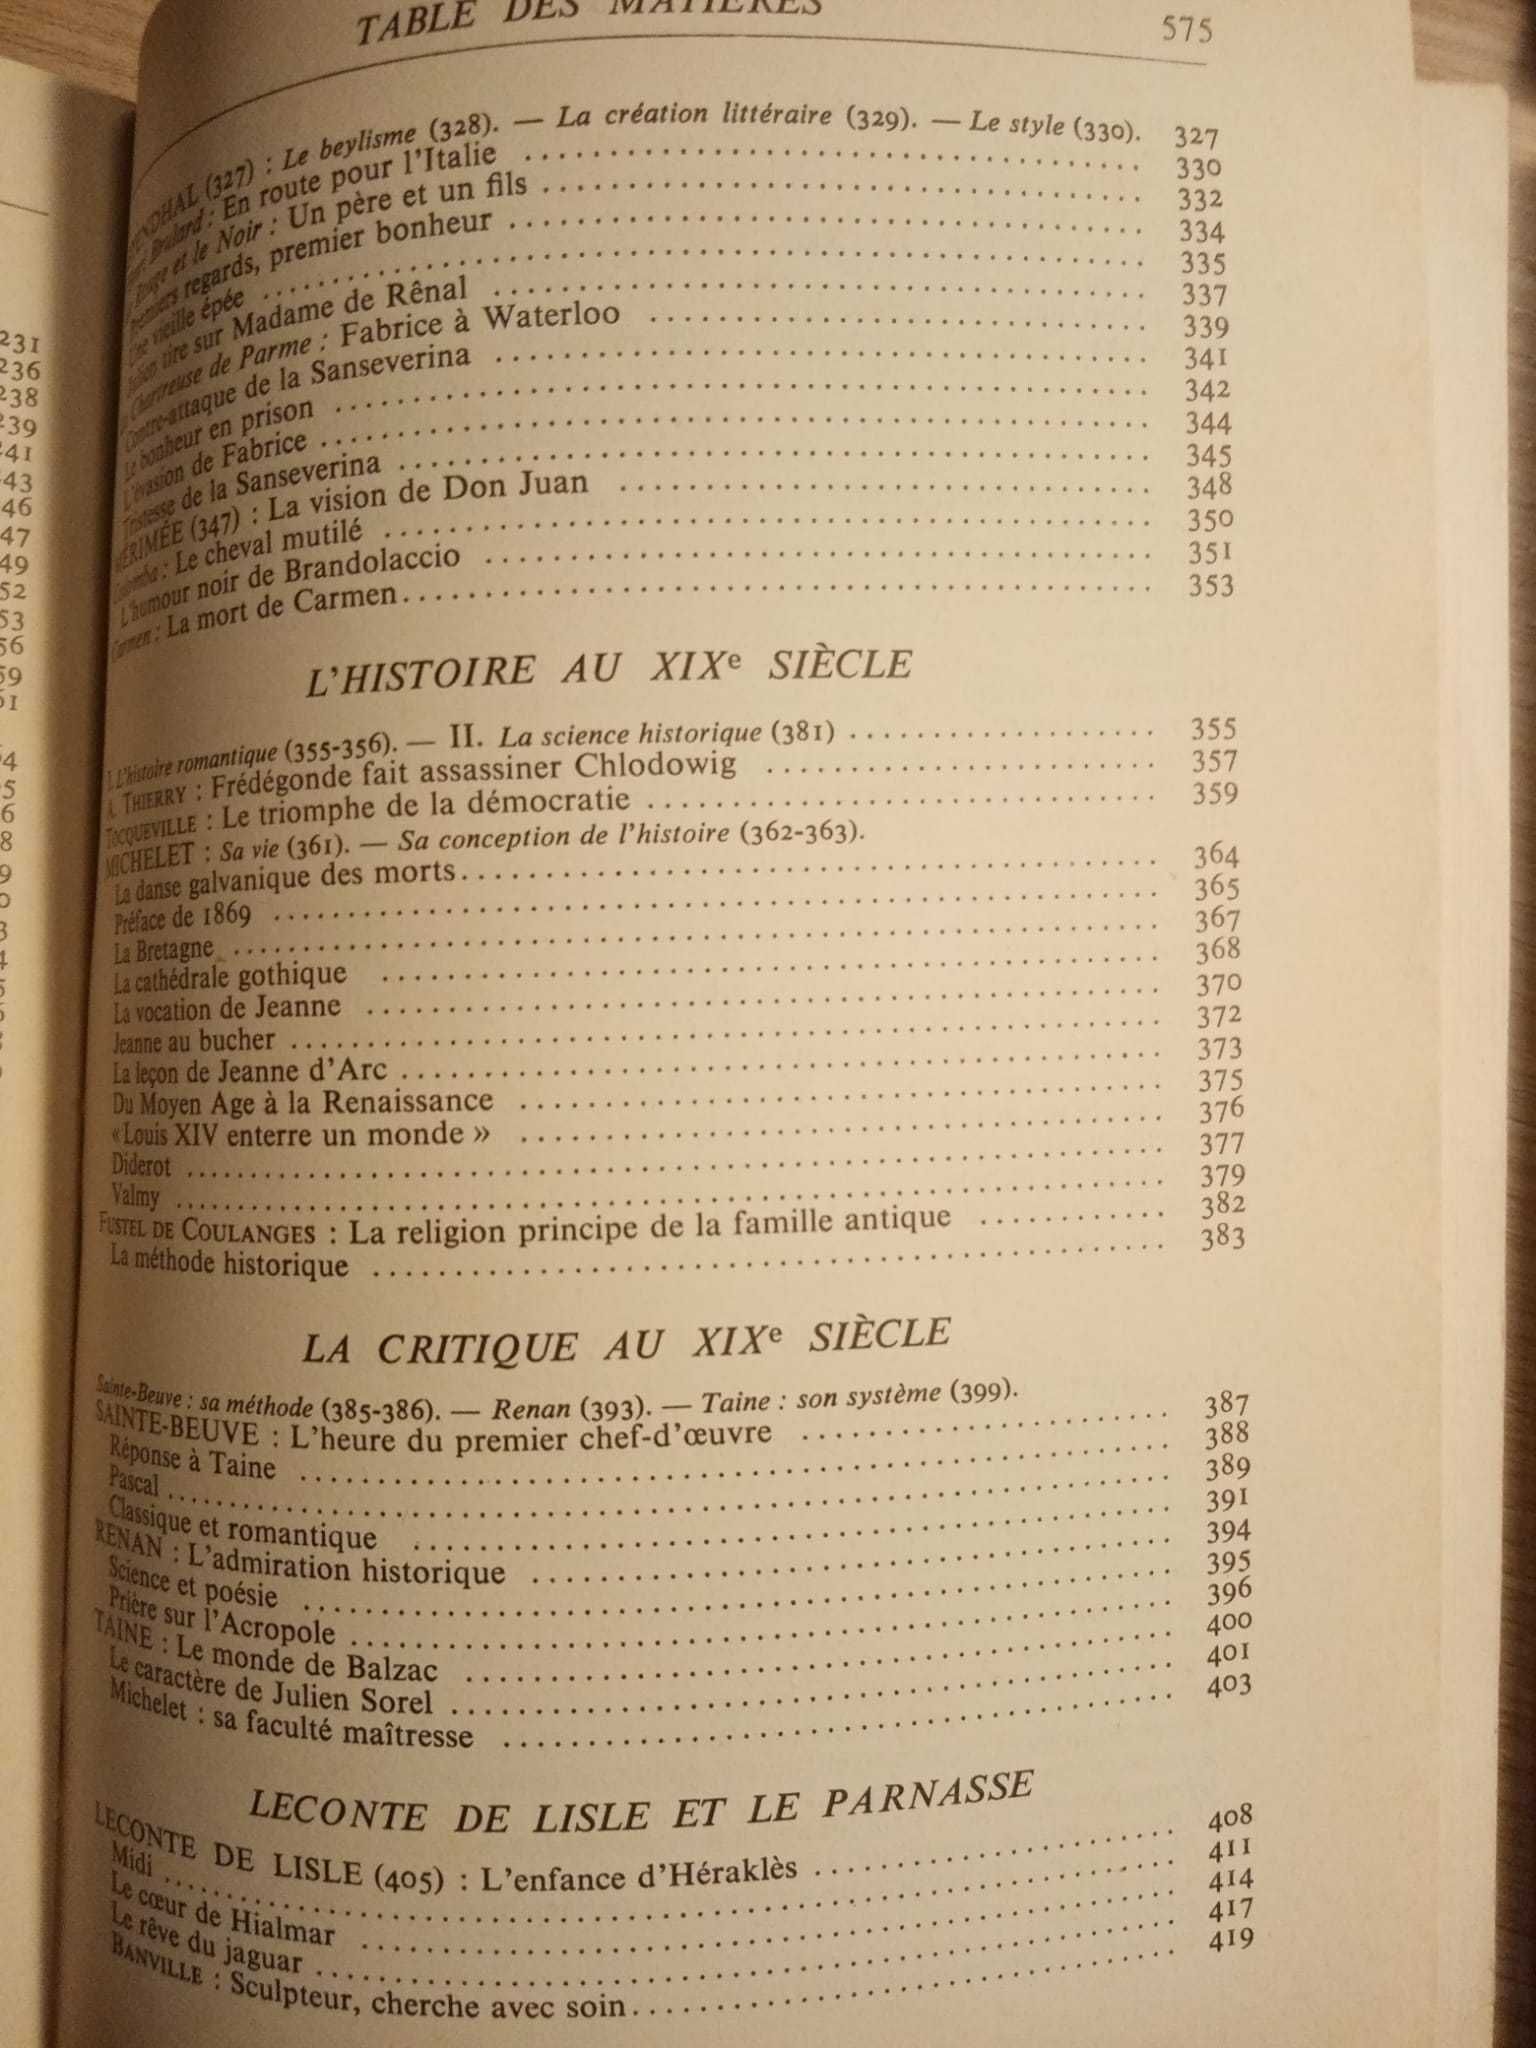 Coleção Literatura Francesa (Século XIX) de Lagarde e Michard